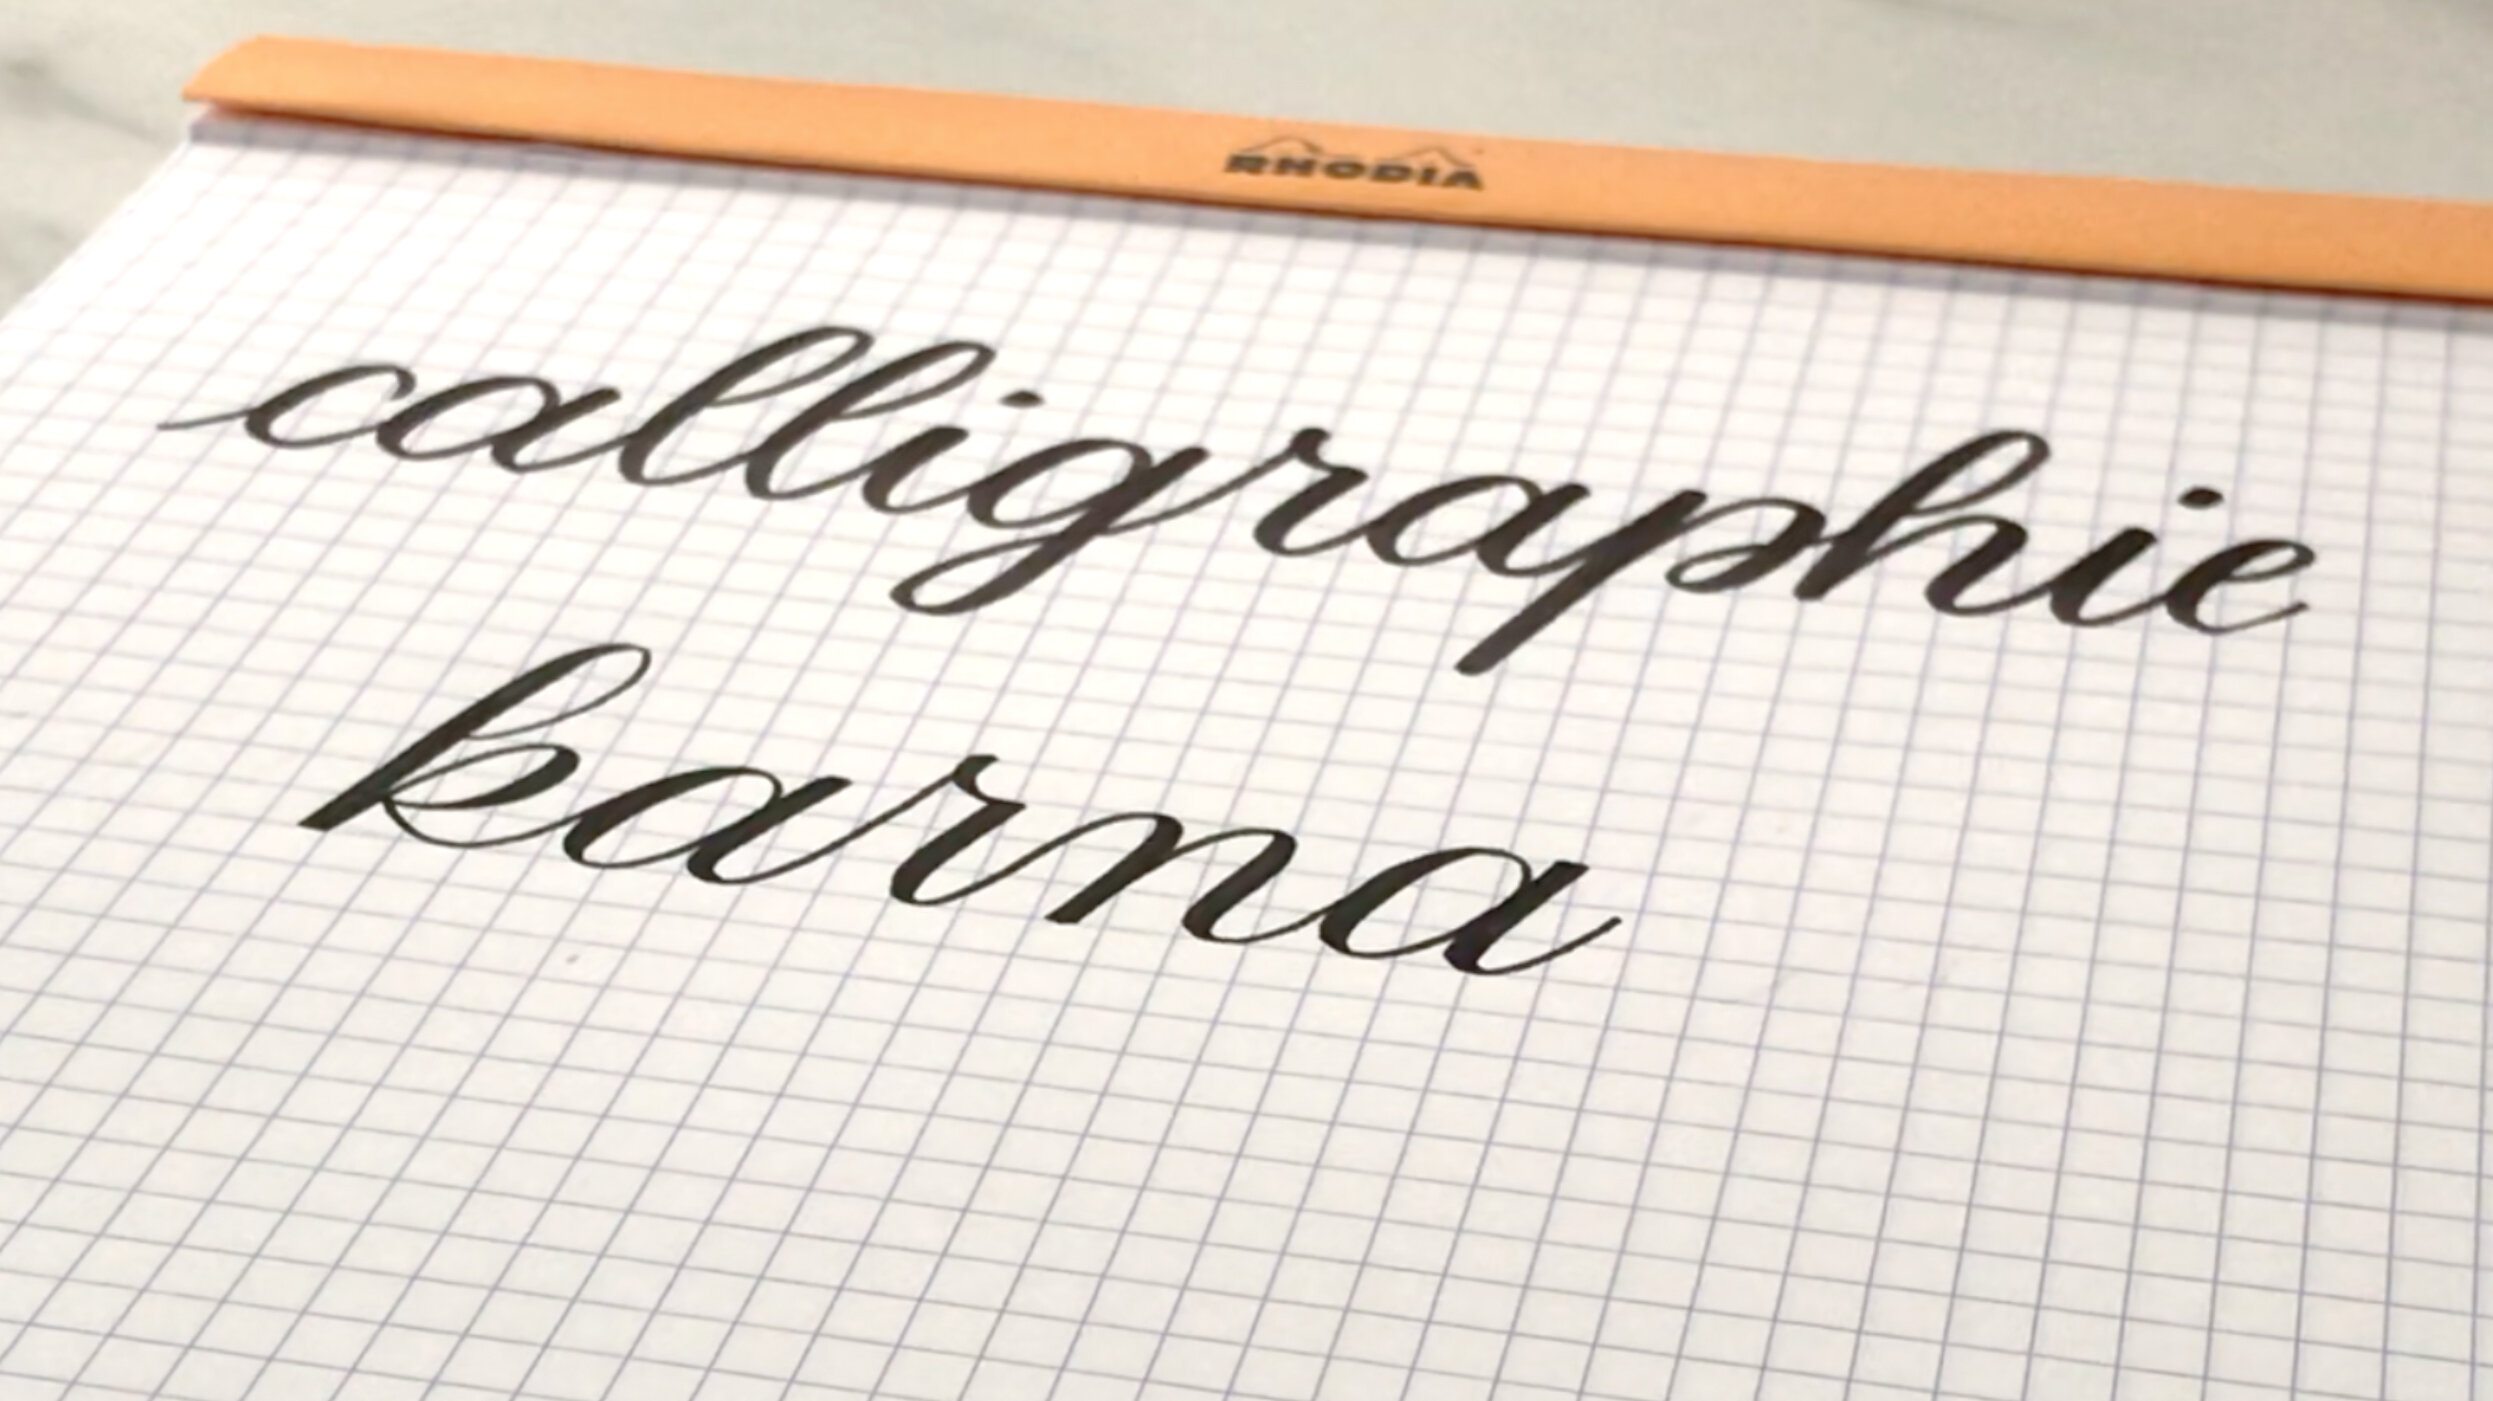 Faux calligraphie : Calligraphier sans matériel (+ fiche lettering  gratuite) — Alexiane Davenport — Lettering Designer, Créatrice de contenu,  Formatrice